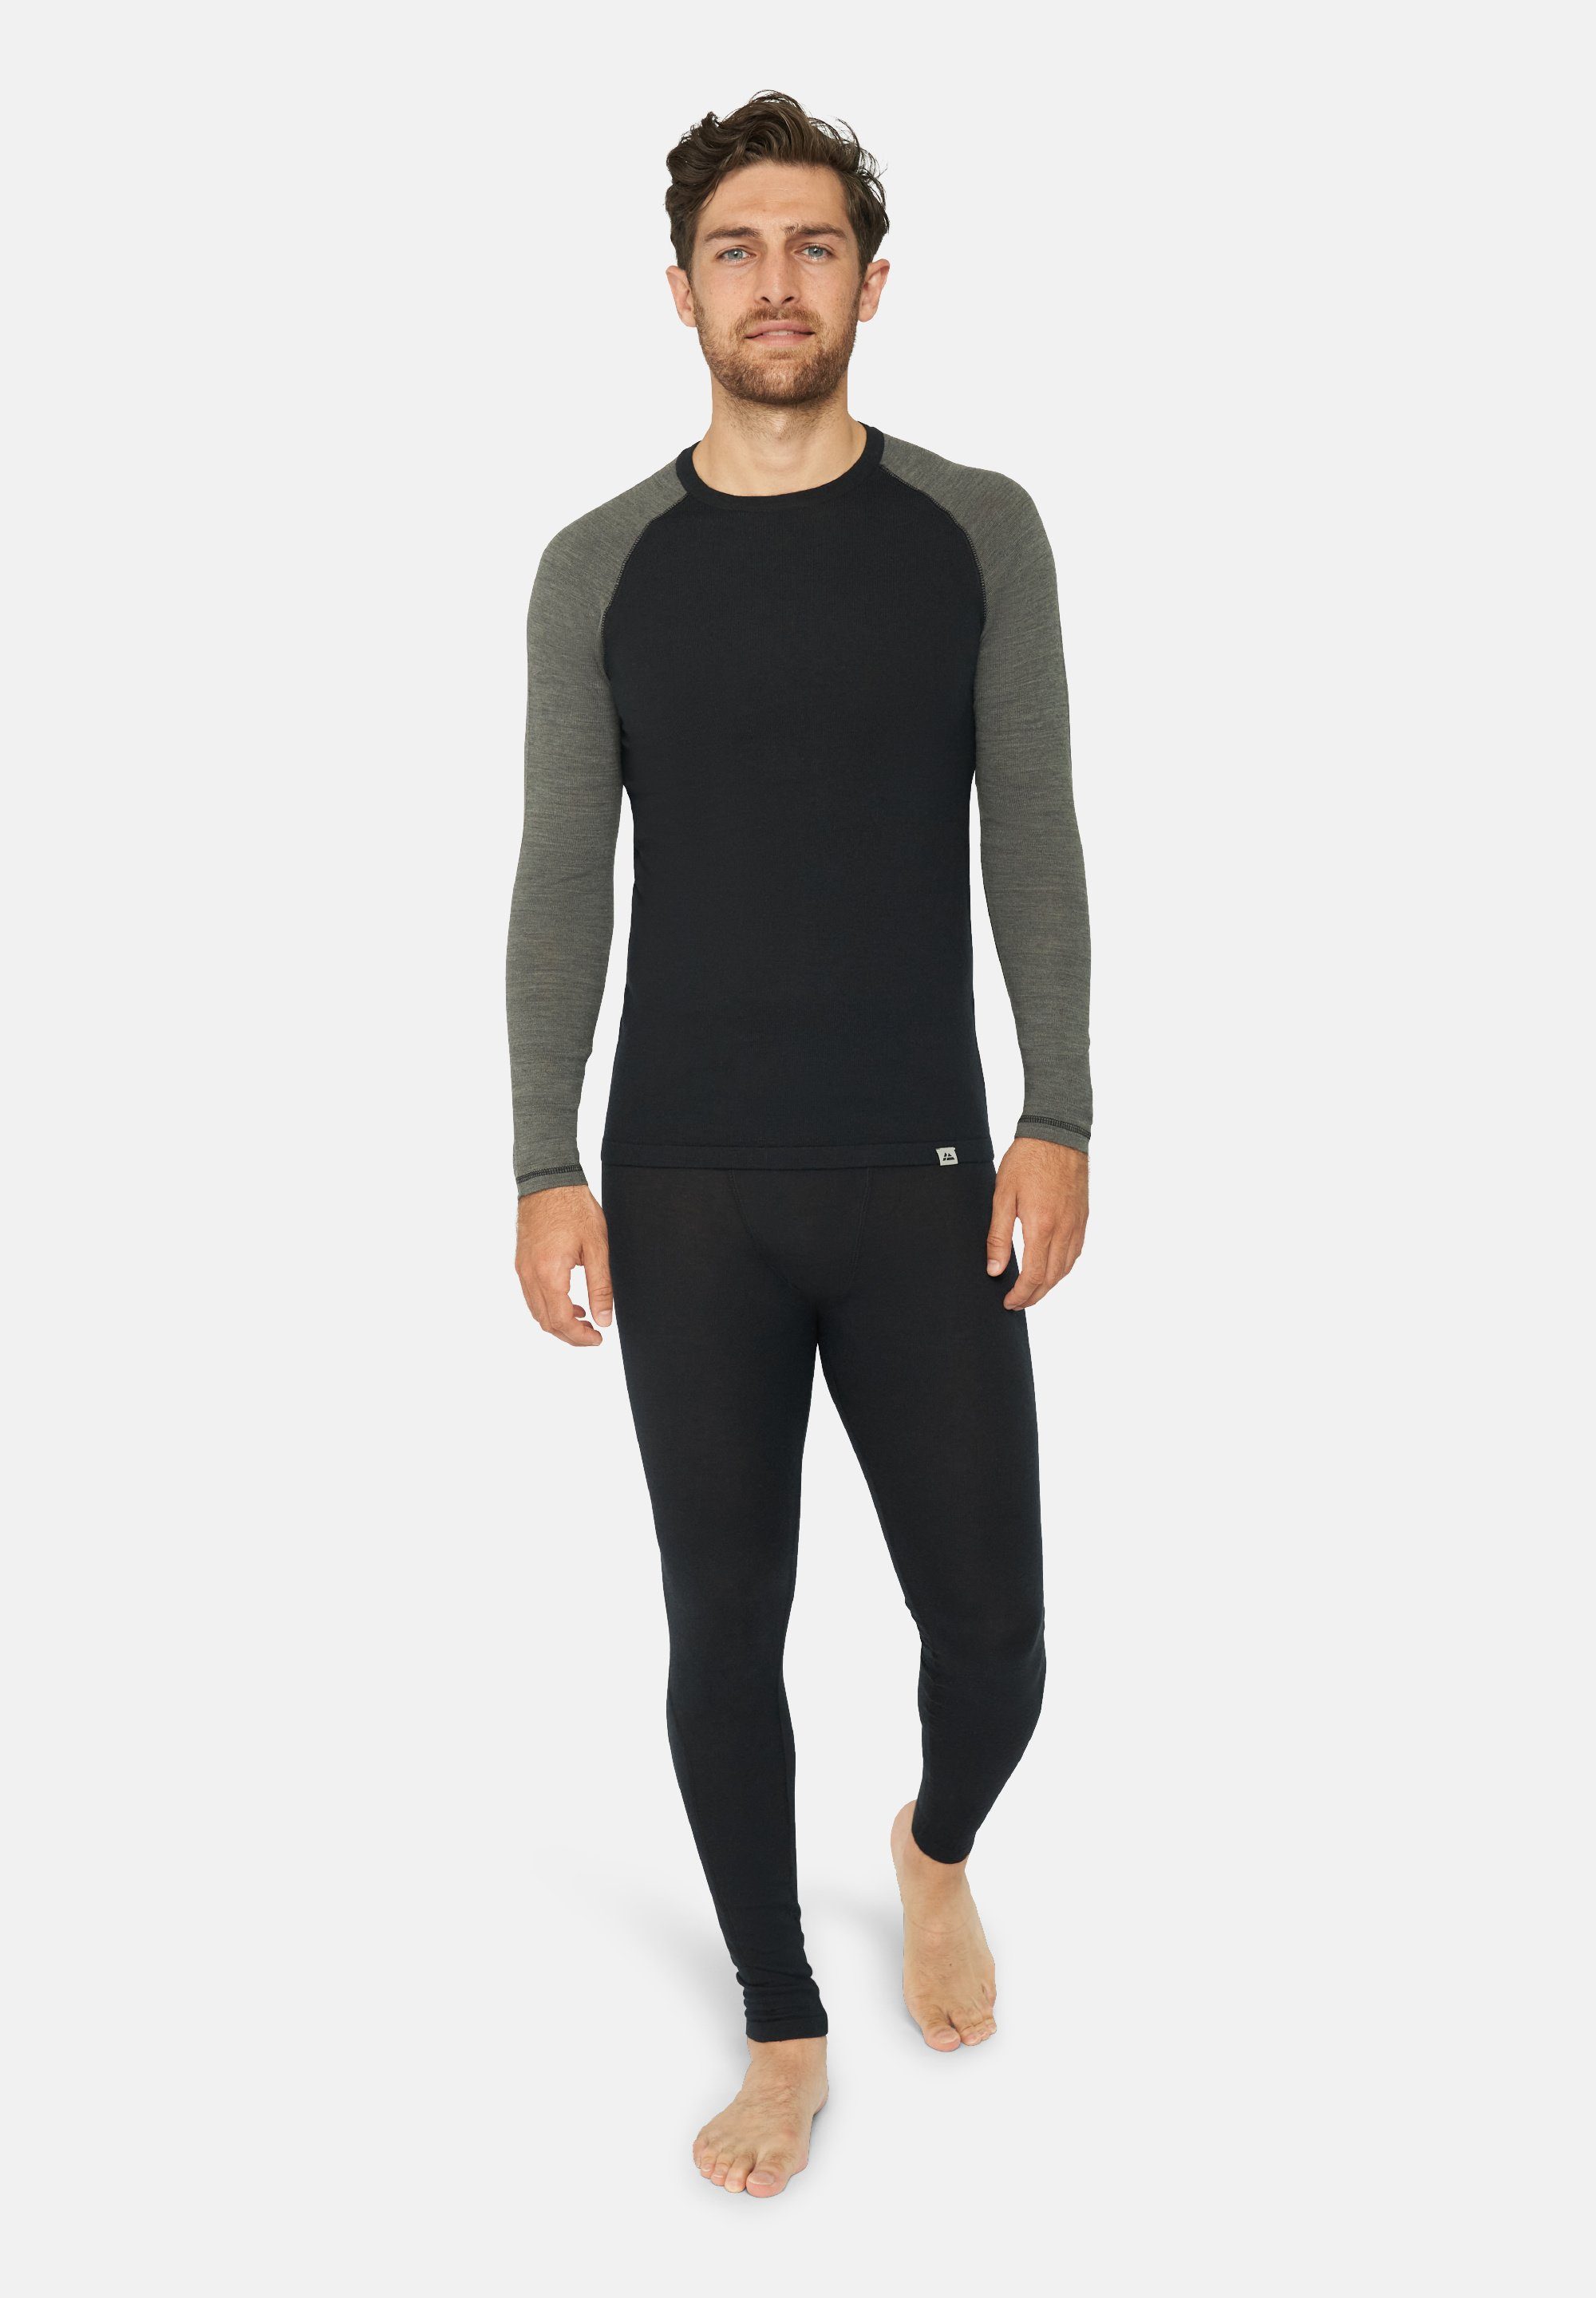 DANISH ENDURANCE Hose, & für Thermo-Unterwäsche Temperaturregulierend Langarm Shirt Set black/dark Herren Thermounterhemd grey Merino